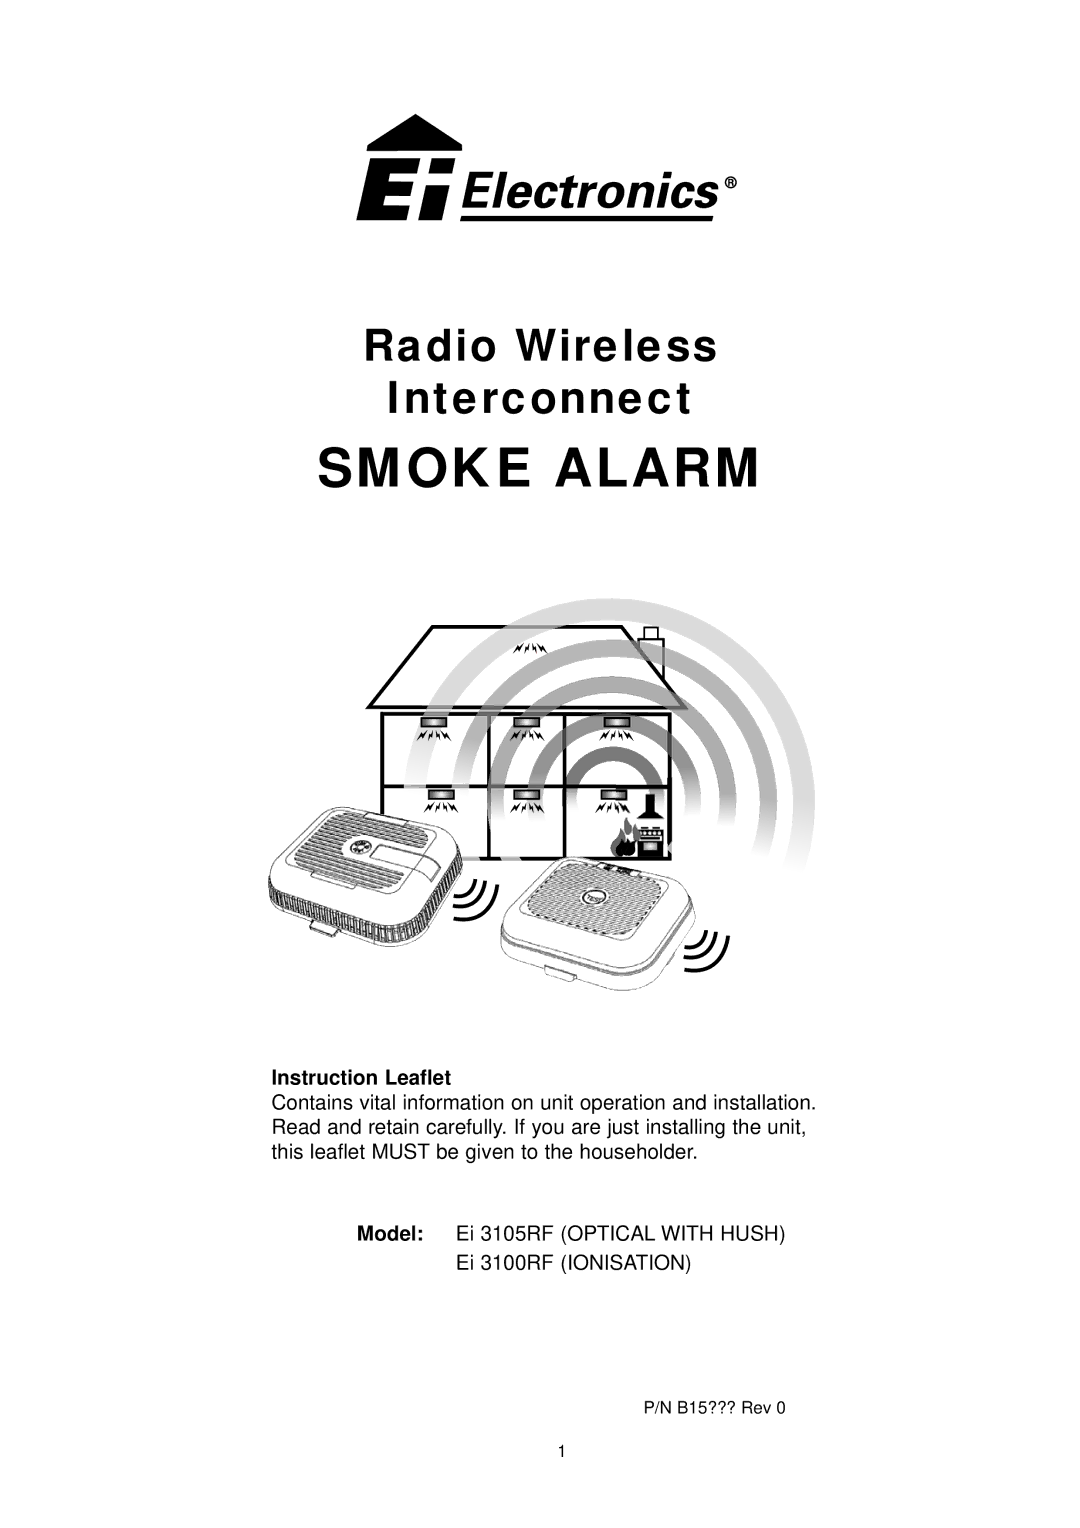 Ei Electronics Ei 3100RF manual Smoke Alarm, Instruction Leaflet 